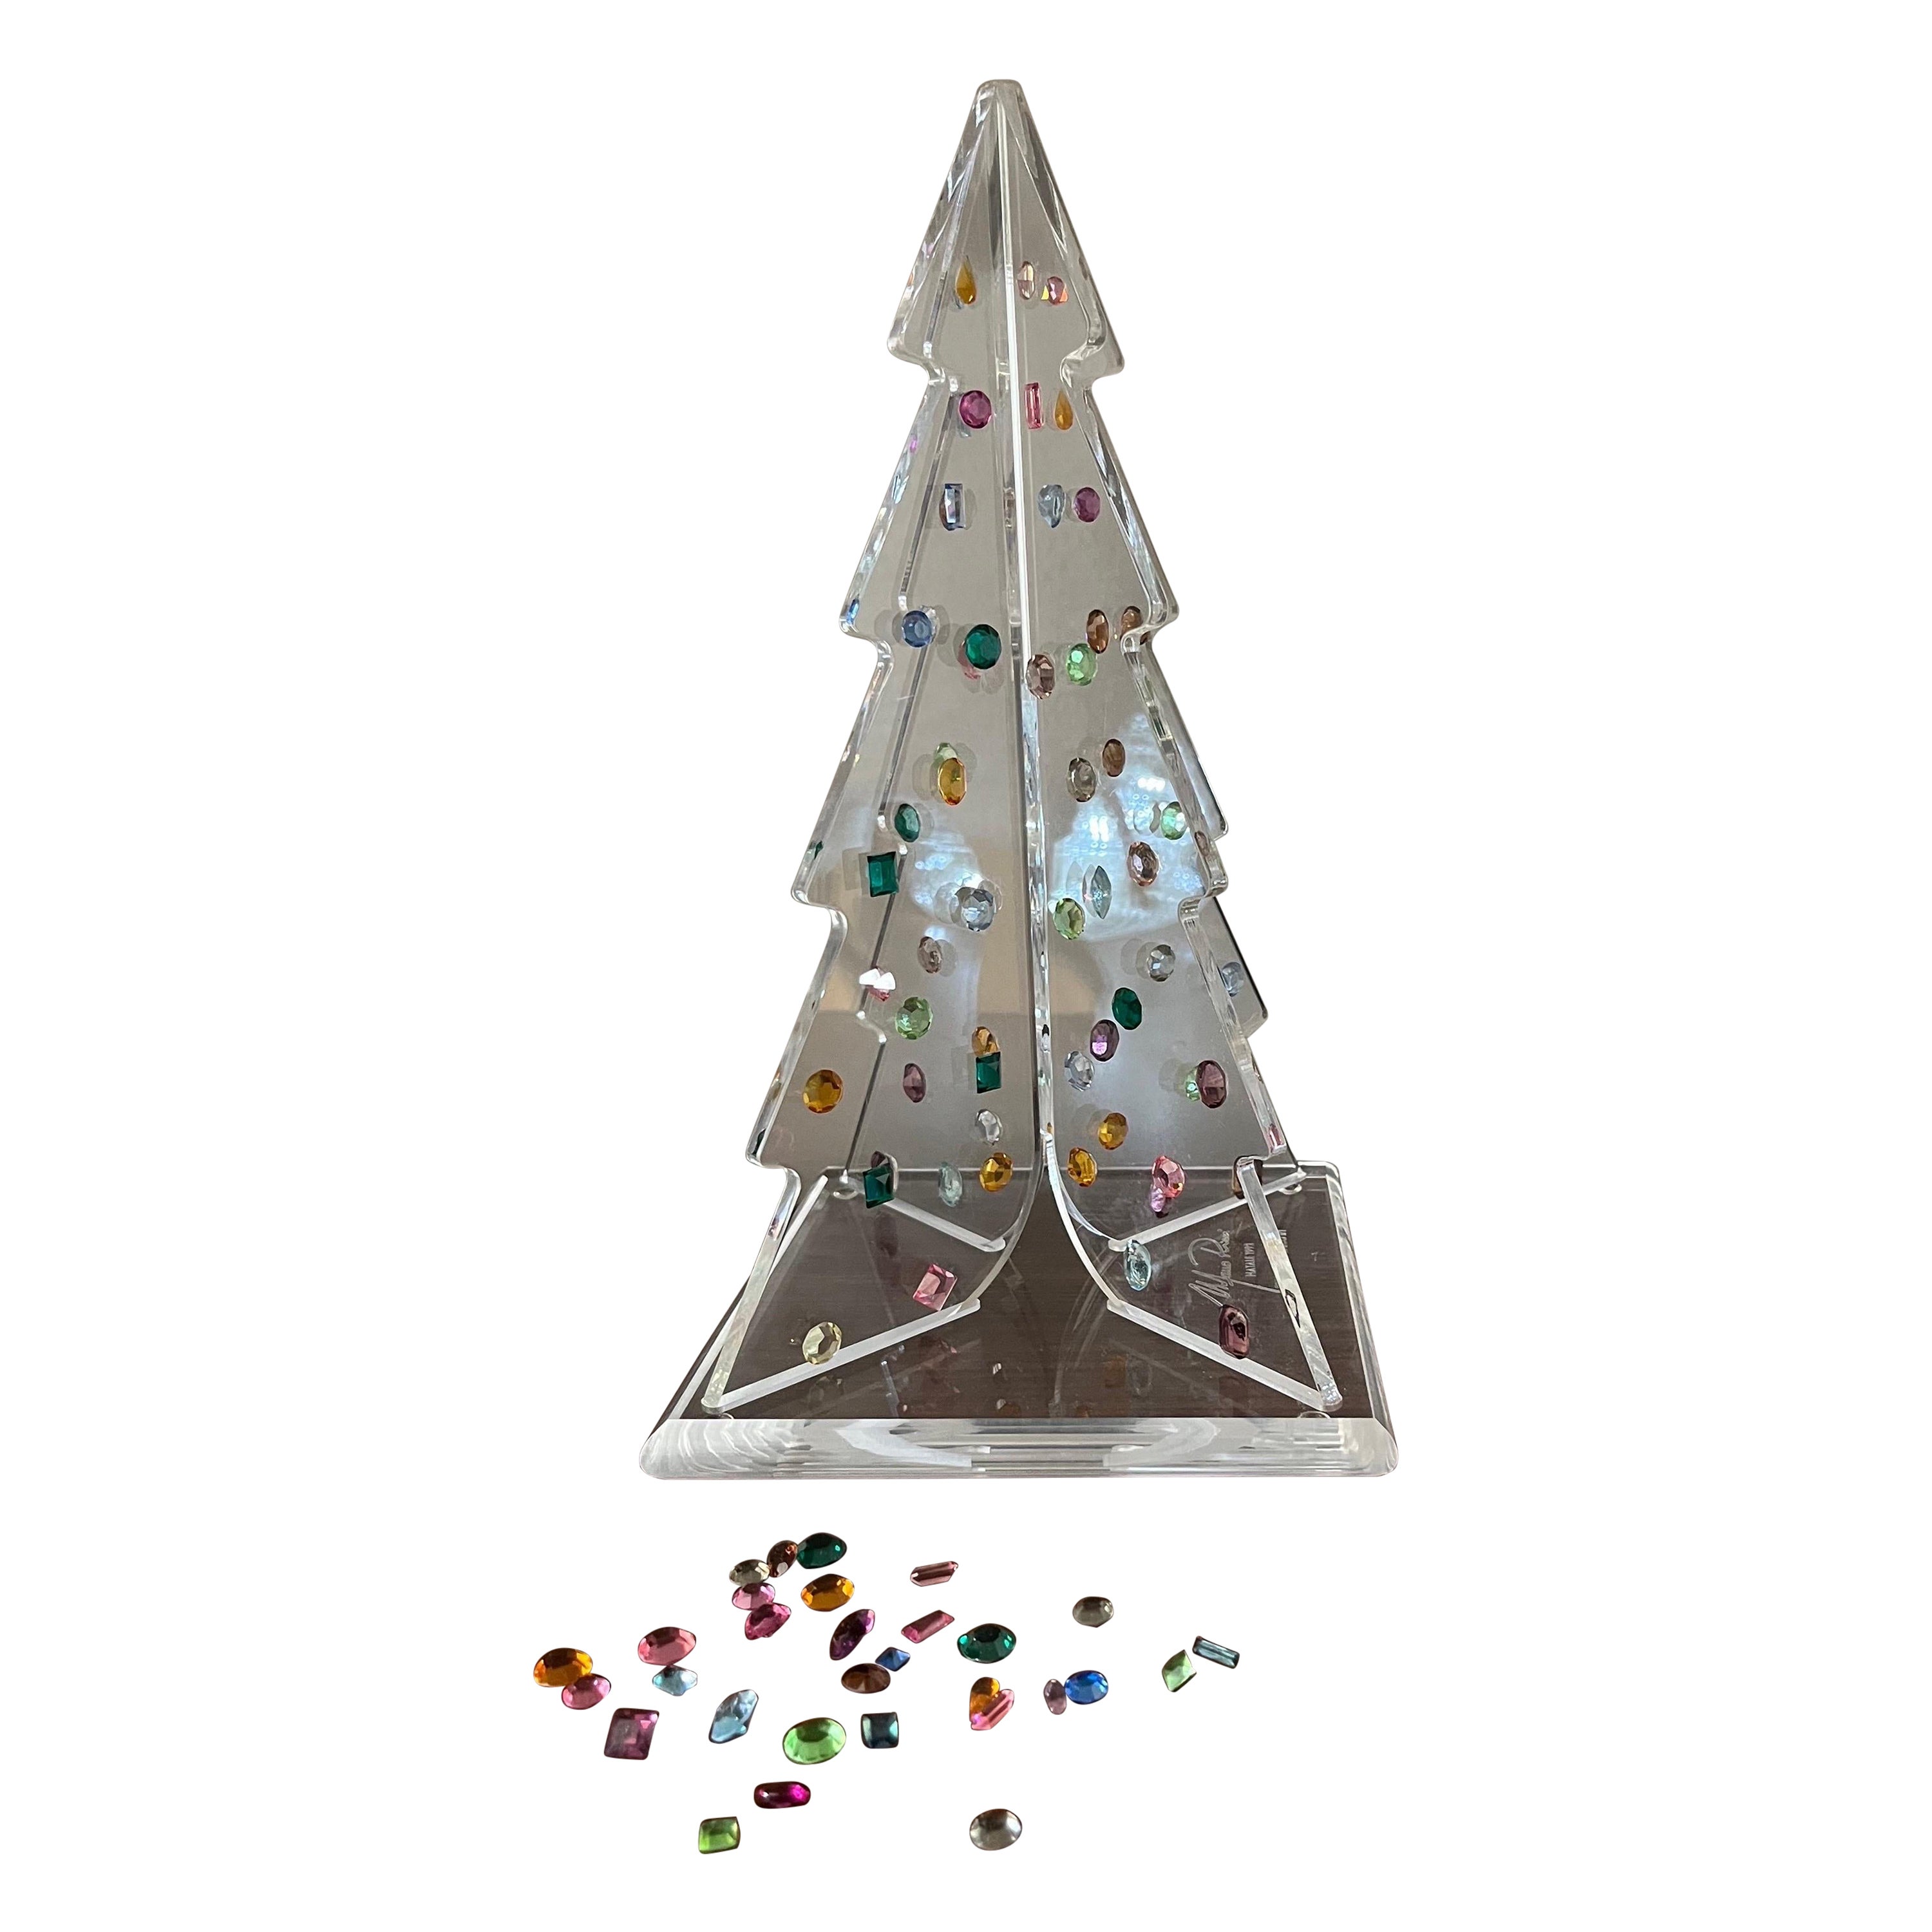 Albero di Natale Plexiglas e Cristalli Swarovski esemplare unico 1992 For Sale